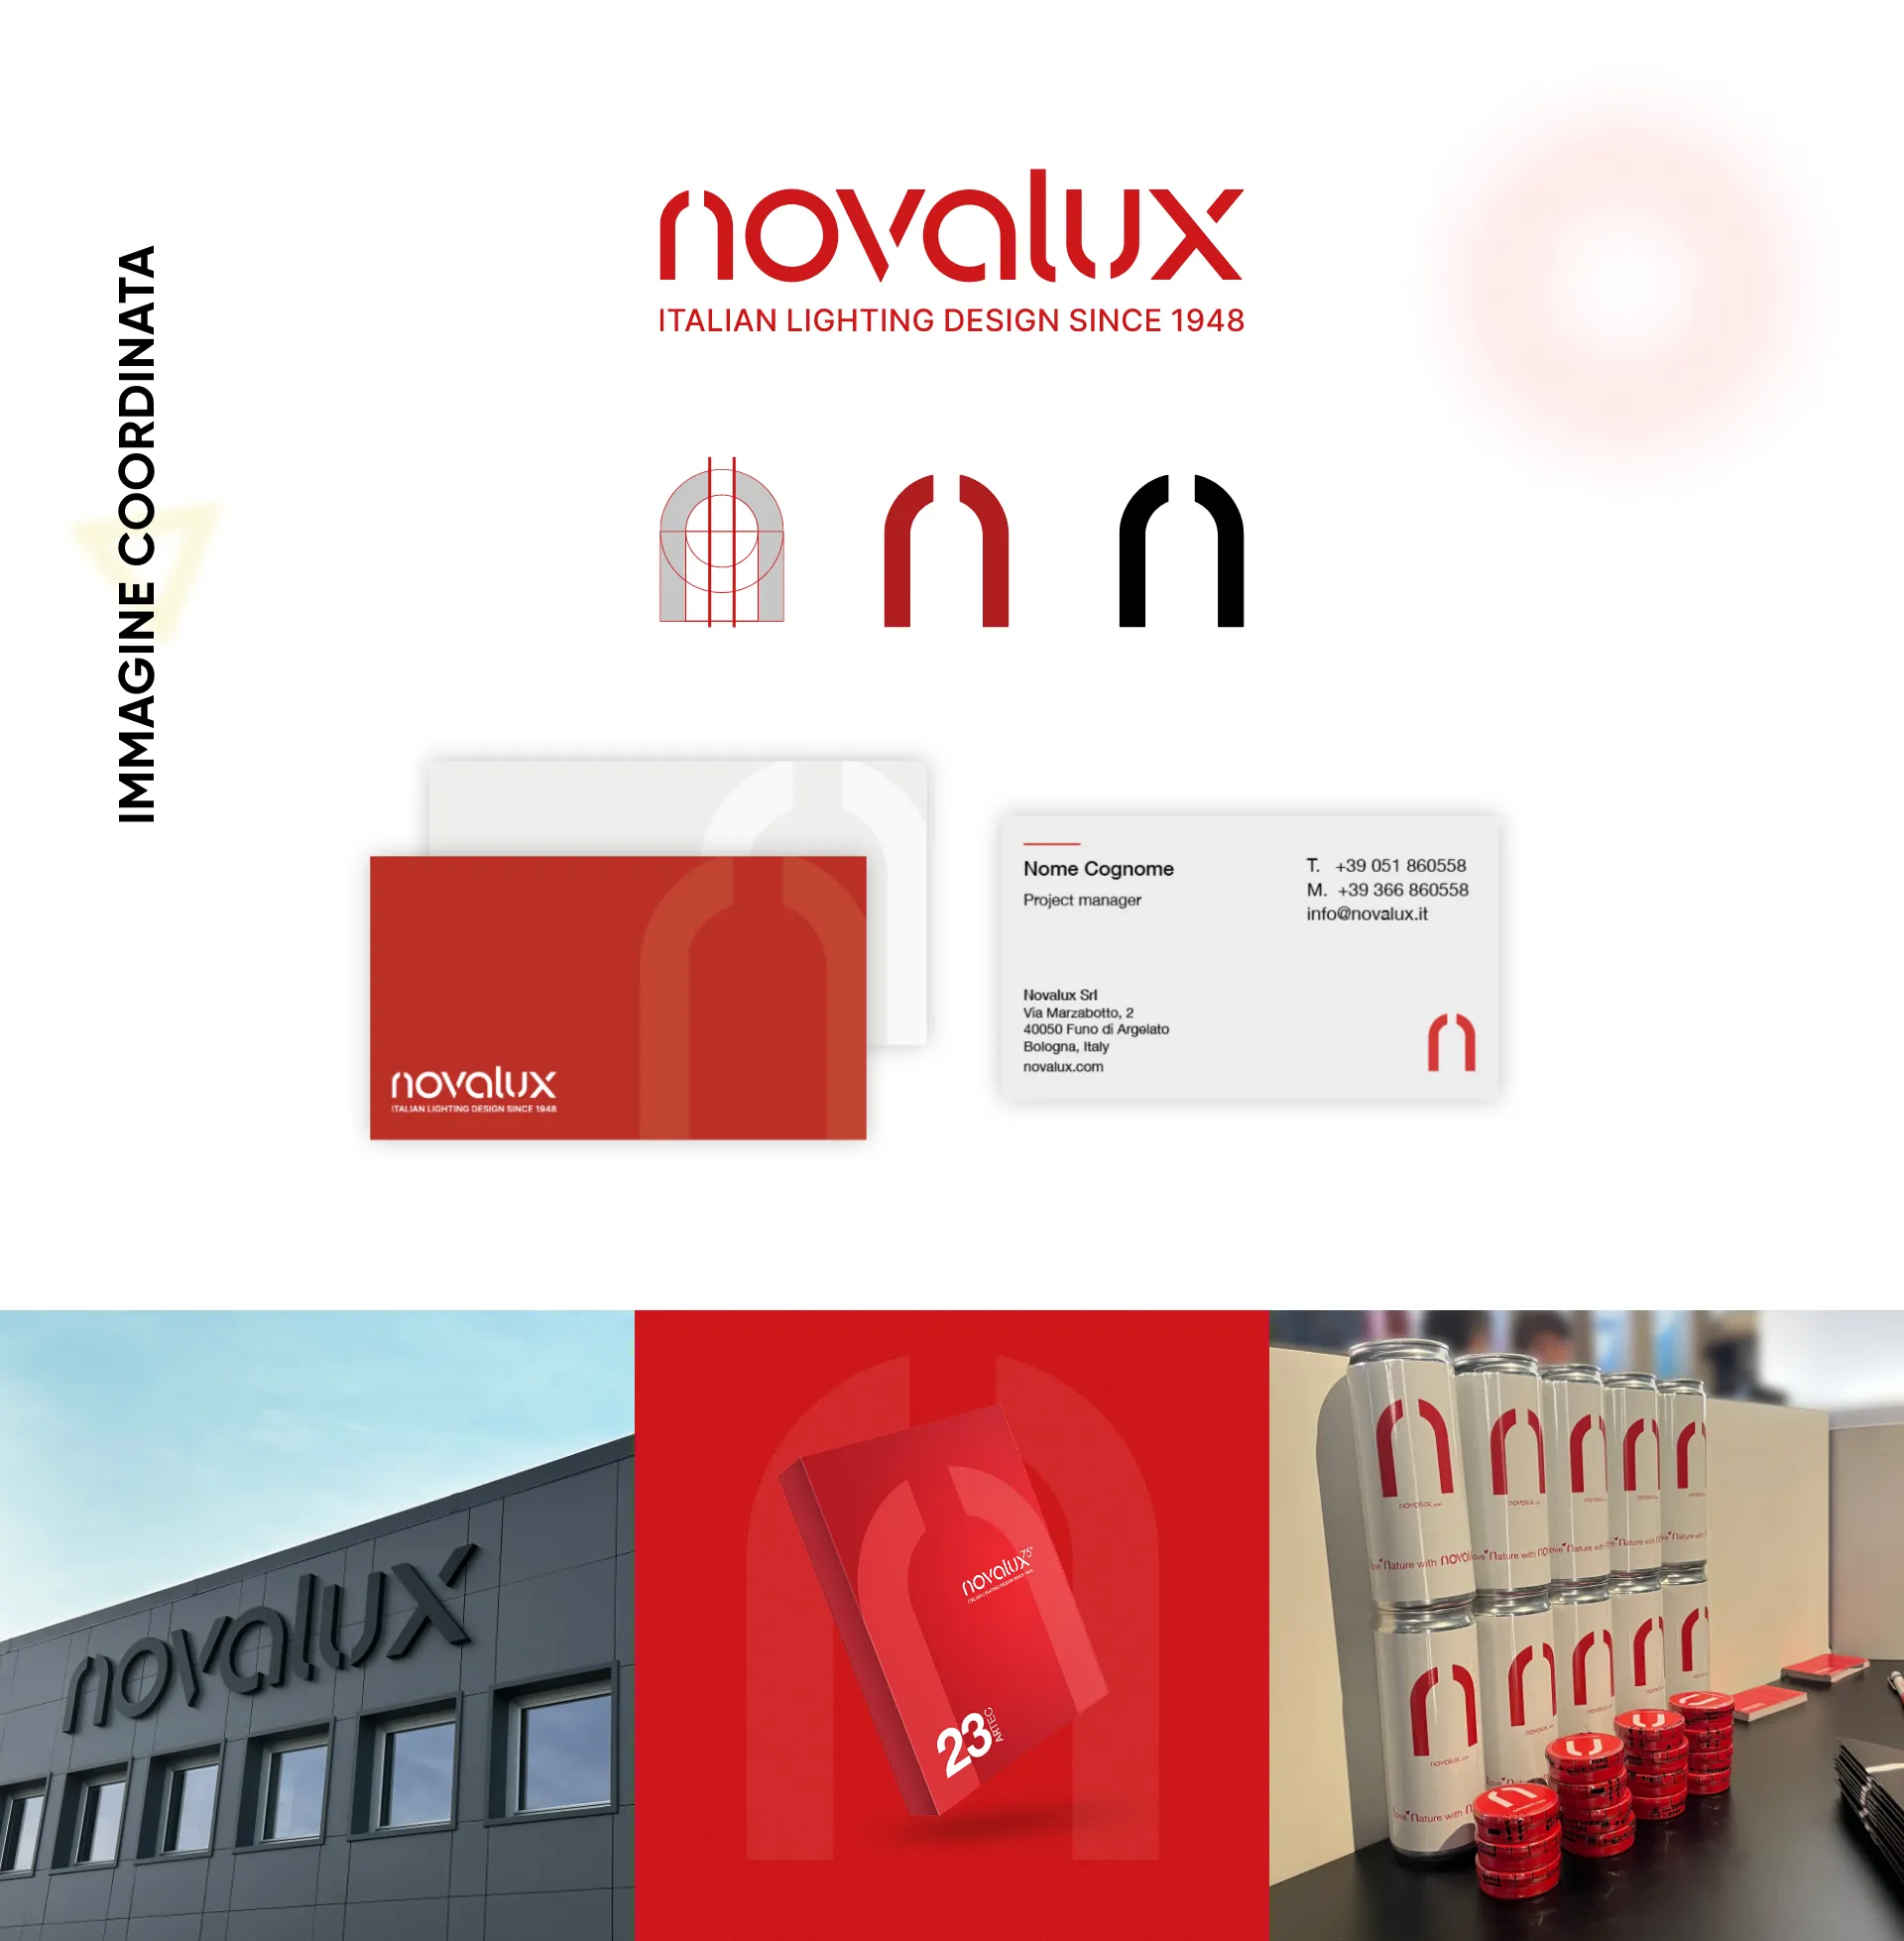 novalux illuminazione architetturale immagine coordinata iprov digital agency